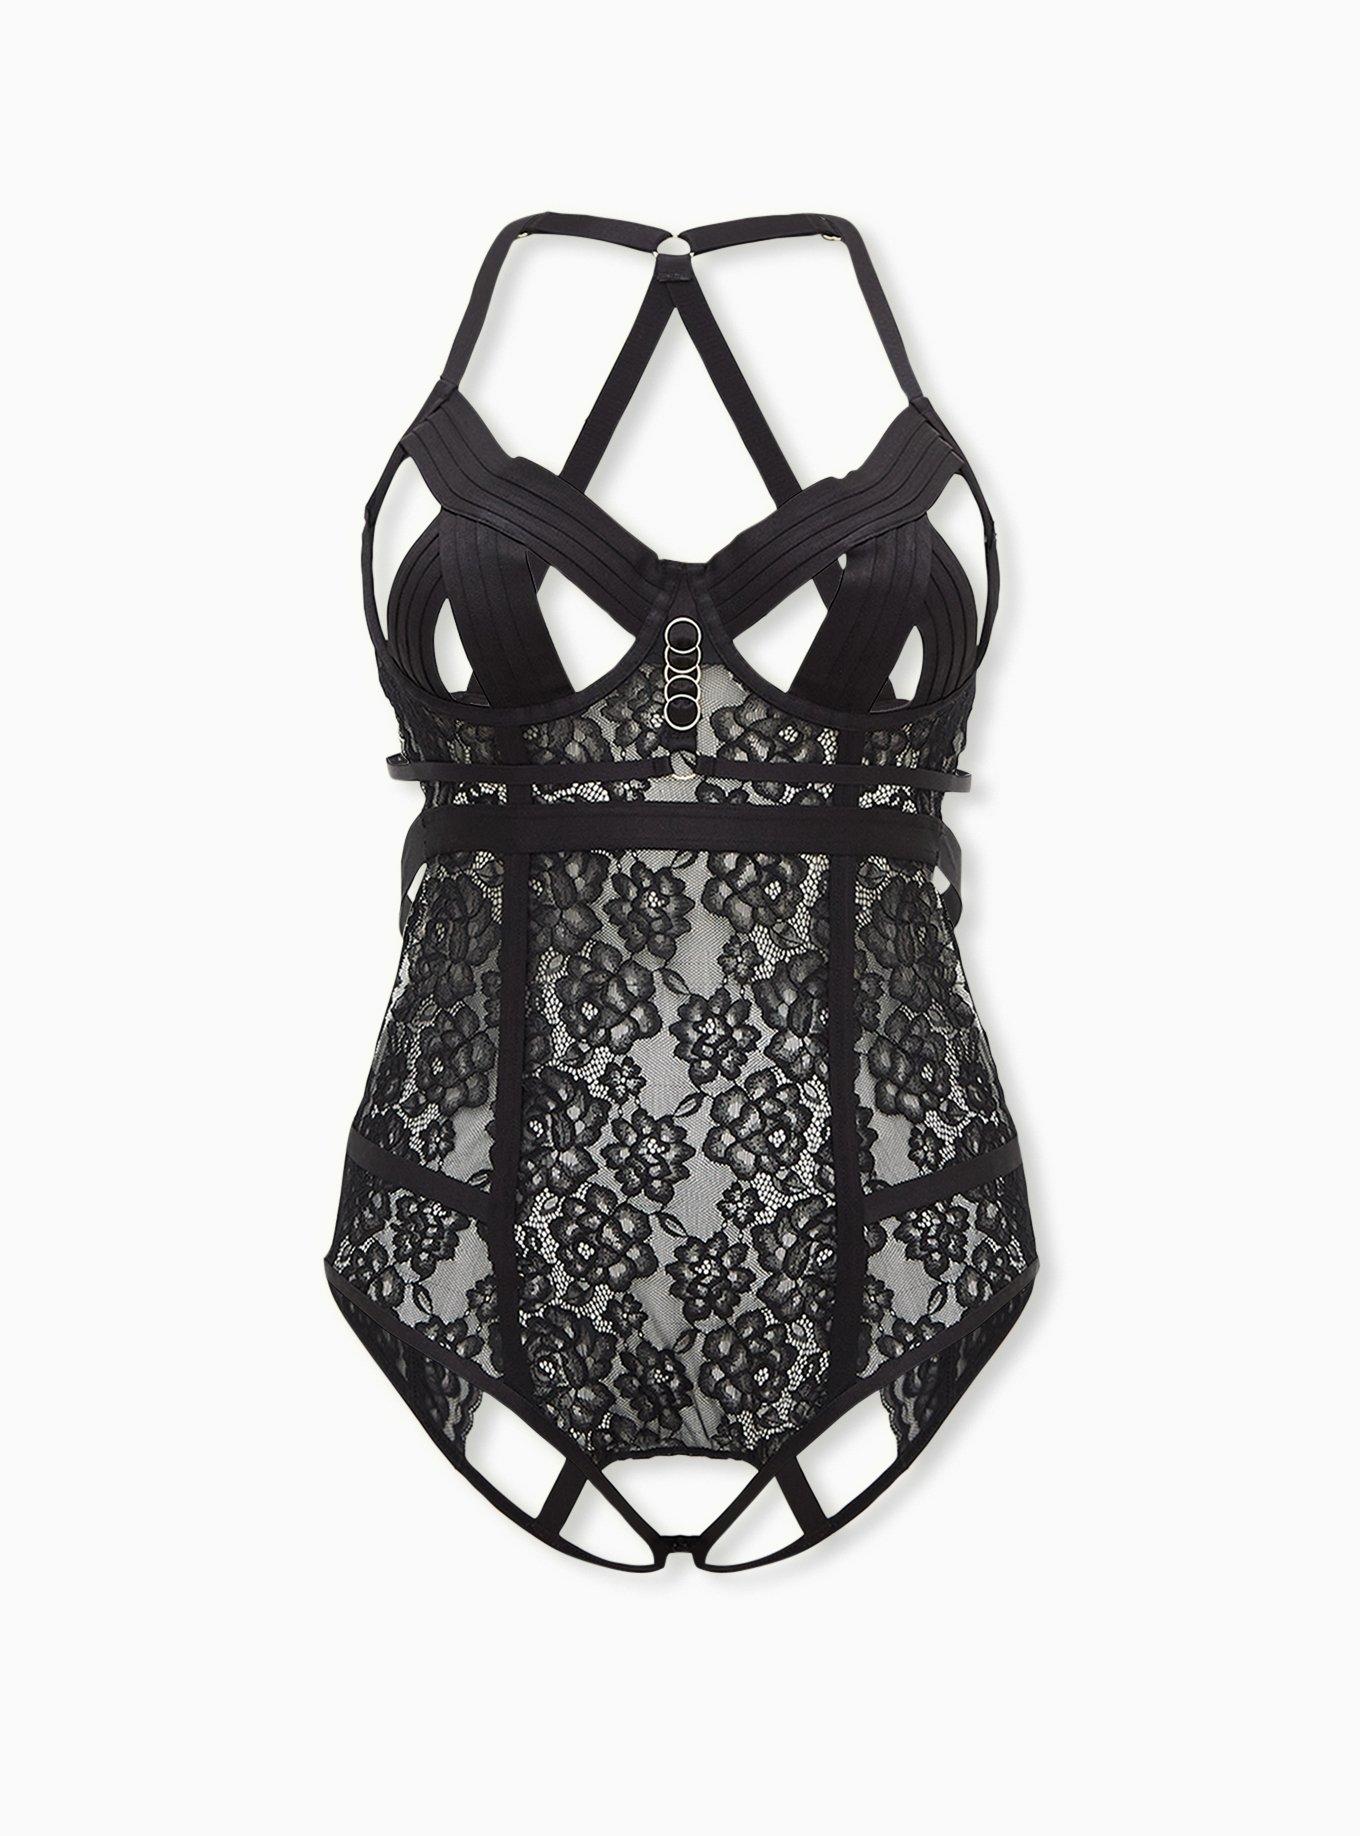 Plus Size - Black Lace Cutout Cage Underwire Bodysuit - Torrid